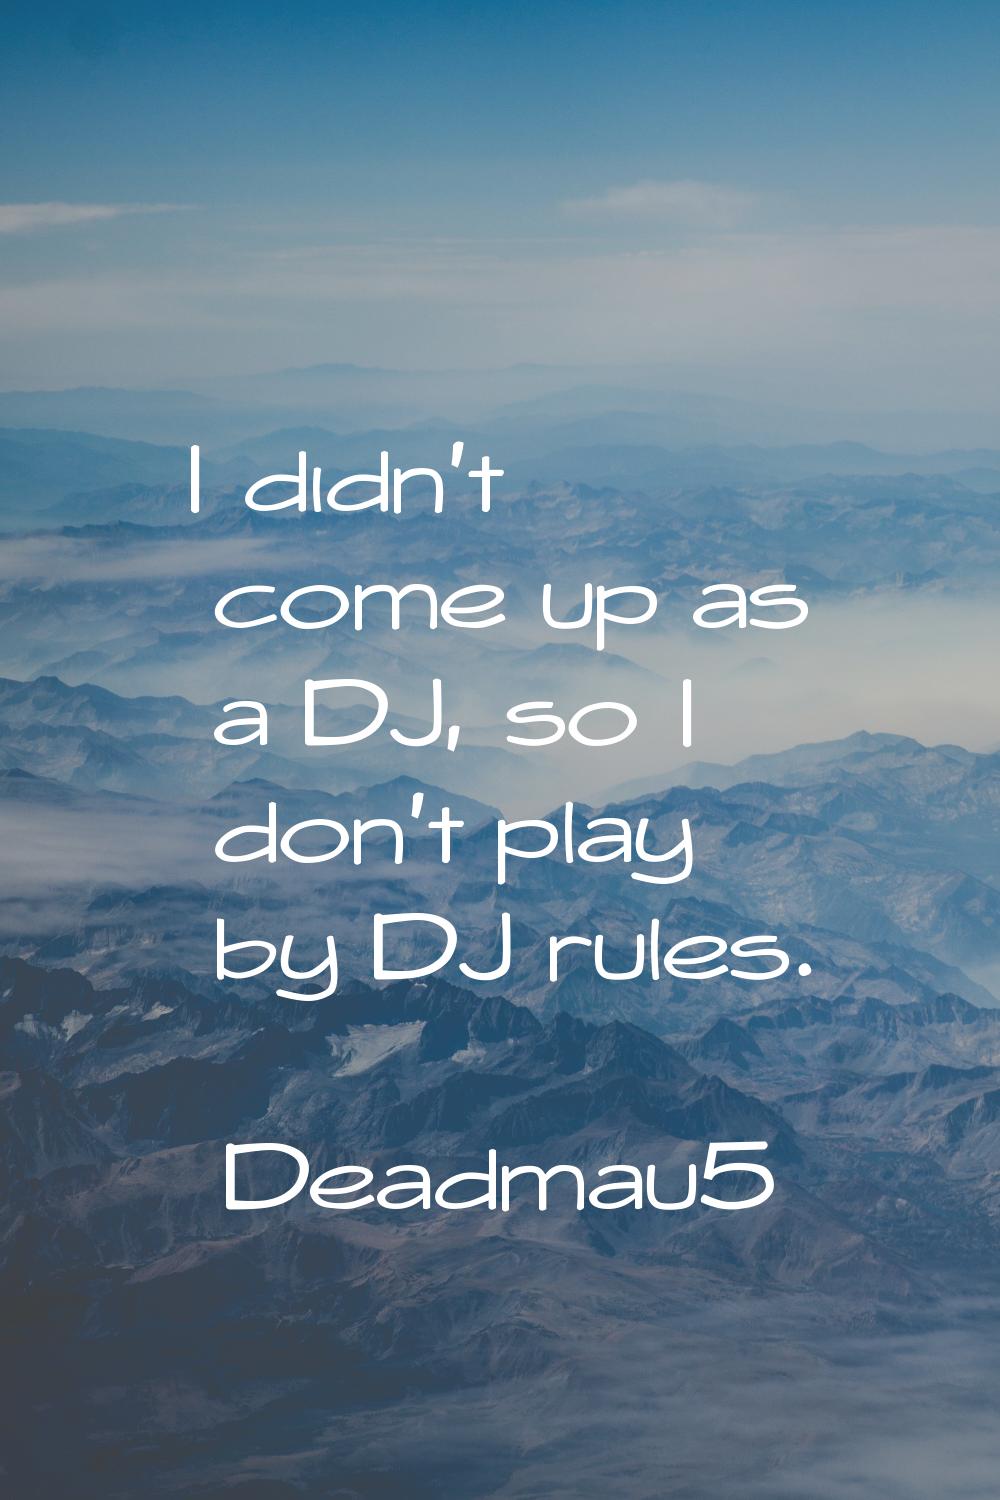 I didn't come up as a DJ, so I don't play by DJ rules.